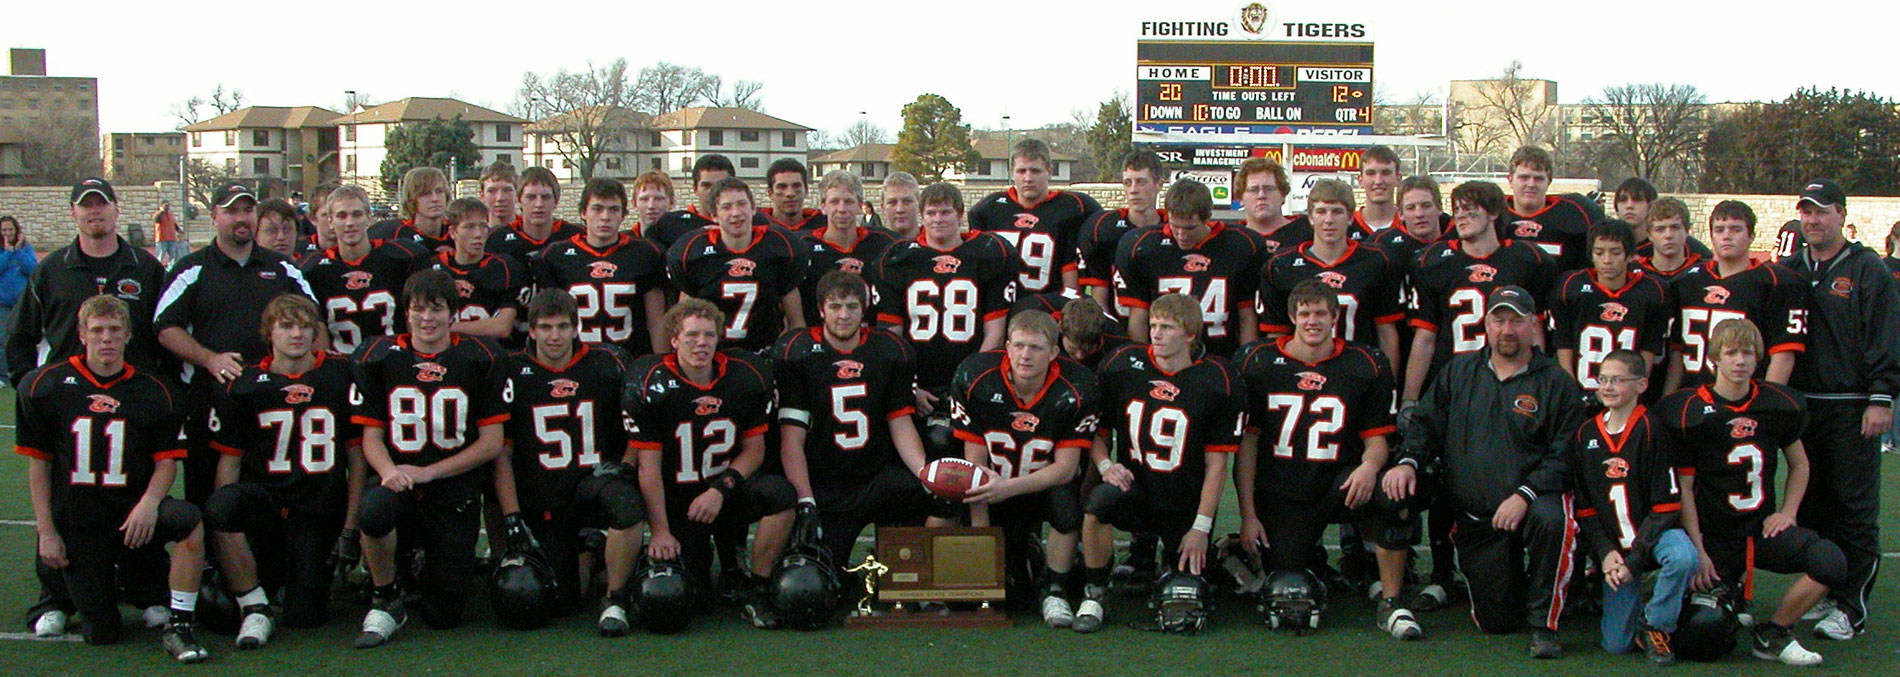 2009 Champions